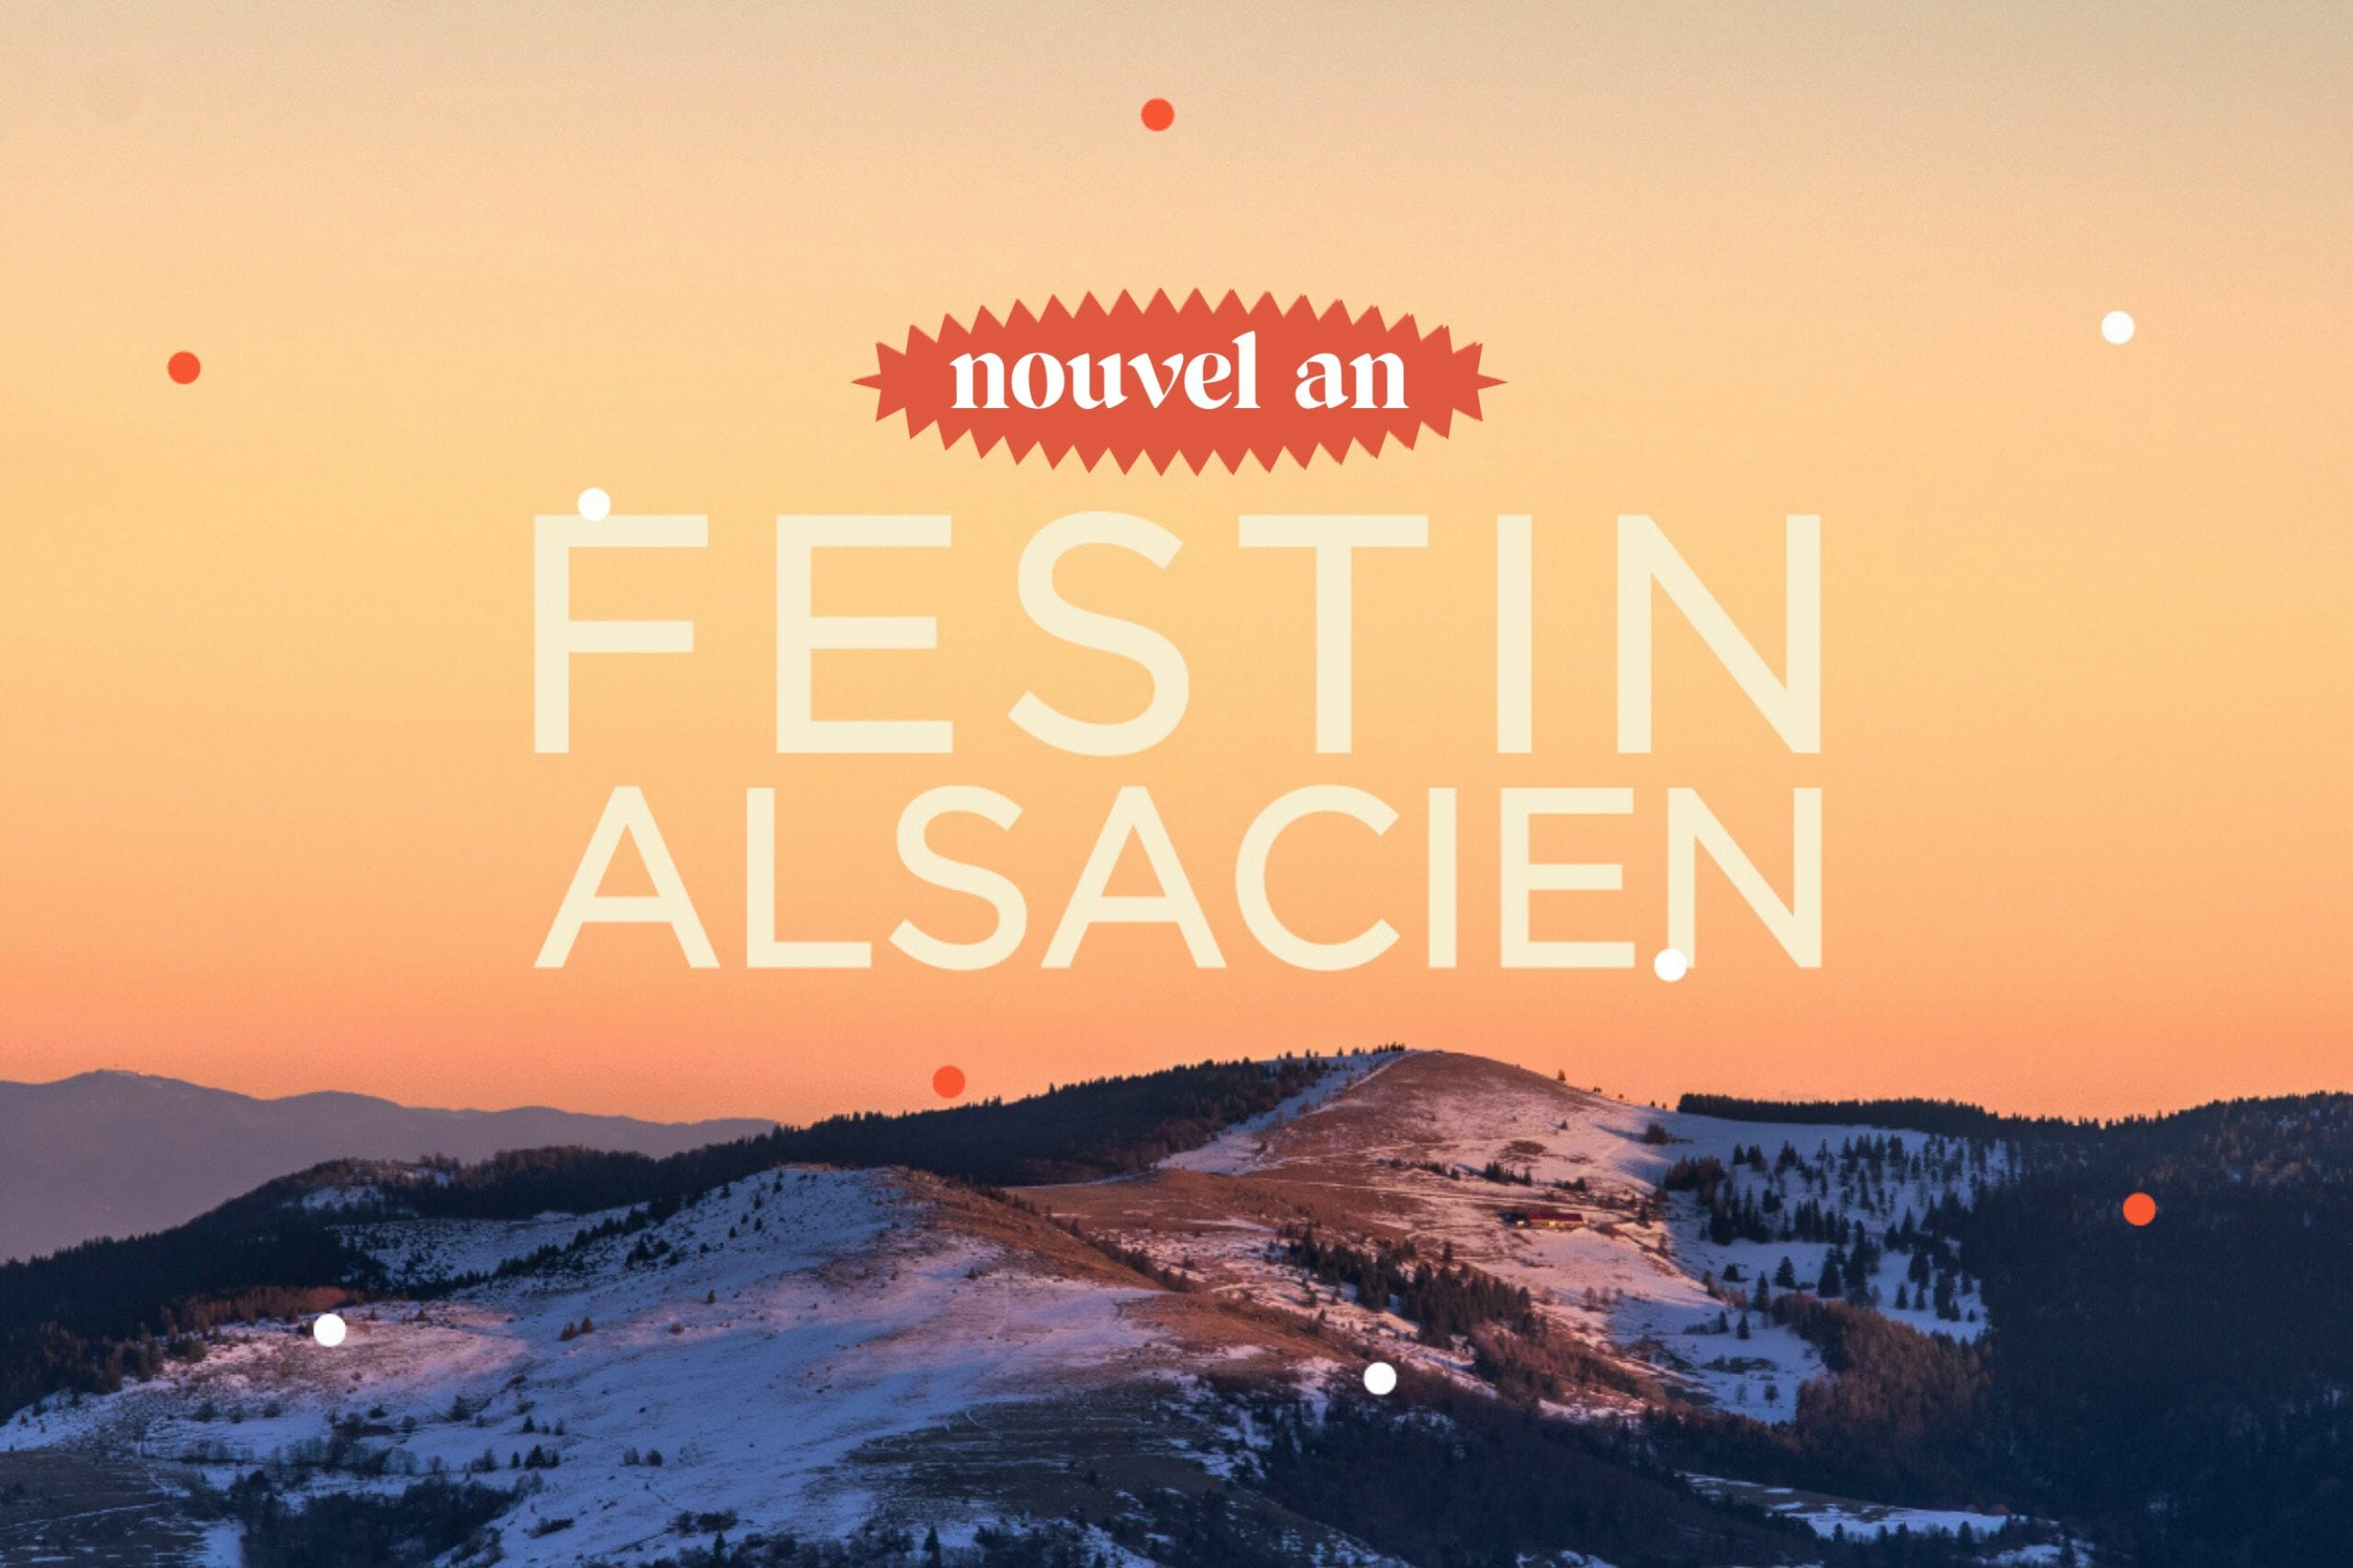 Festin alsacien : Nouvel an gastronomie et randonnée en raquettes en Alsace